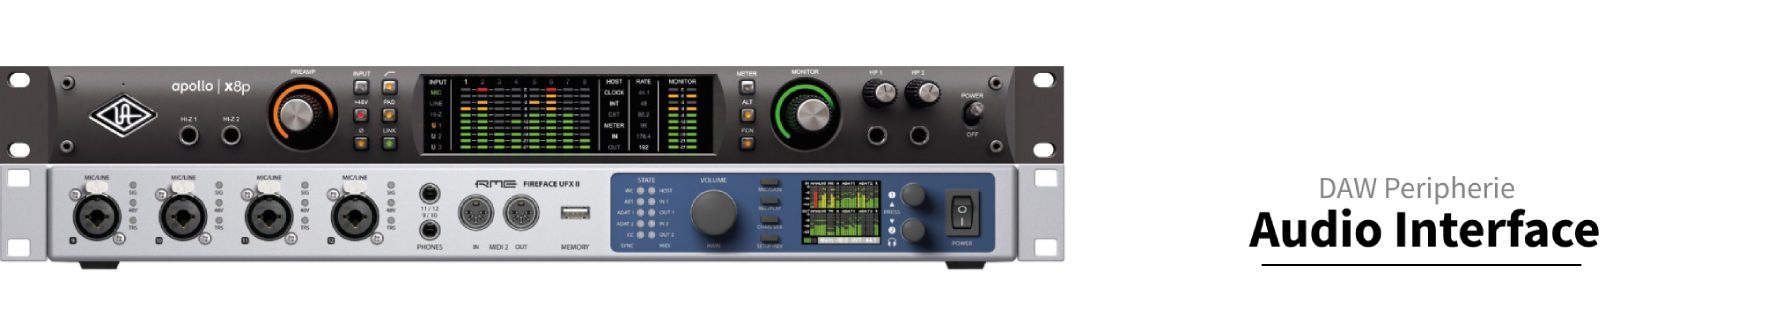 Audio Interface-10 Inputs-10 Outputs-ADAT In-SPDIF coax Out-2 DI-192 kHz